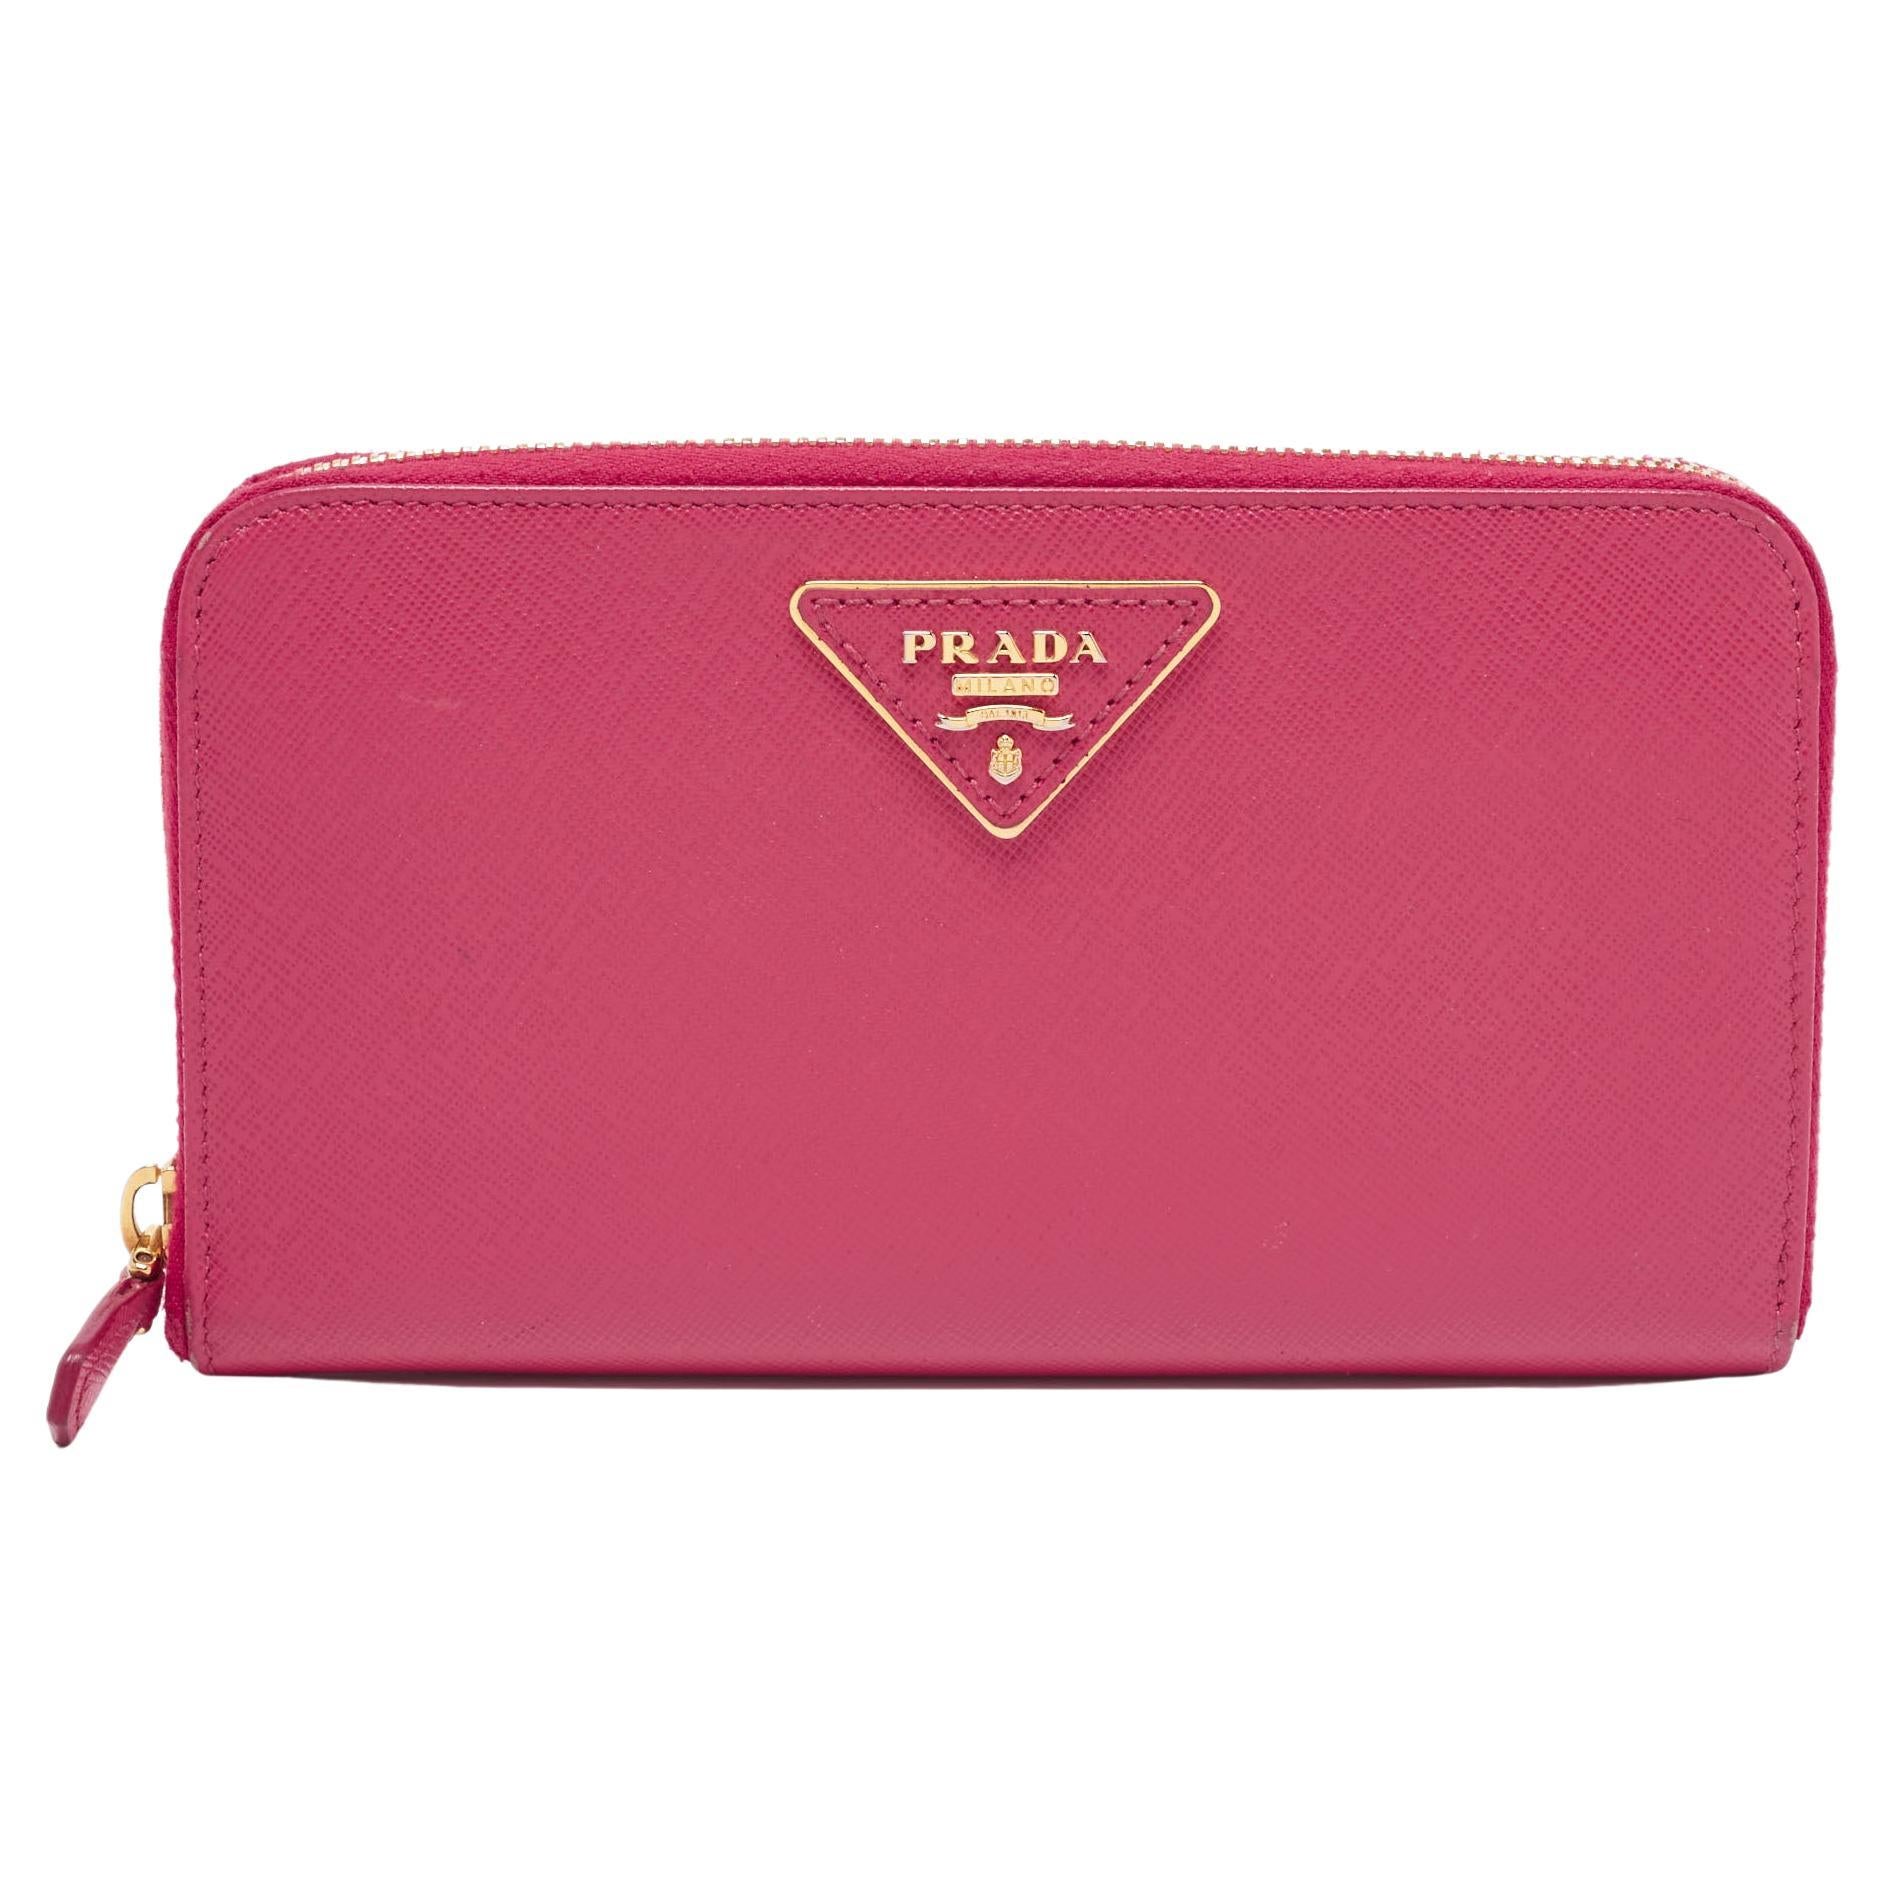 Prada Pink Saffiano Lux Leather Zip Around Wallet